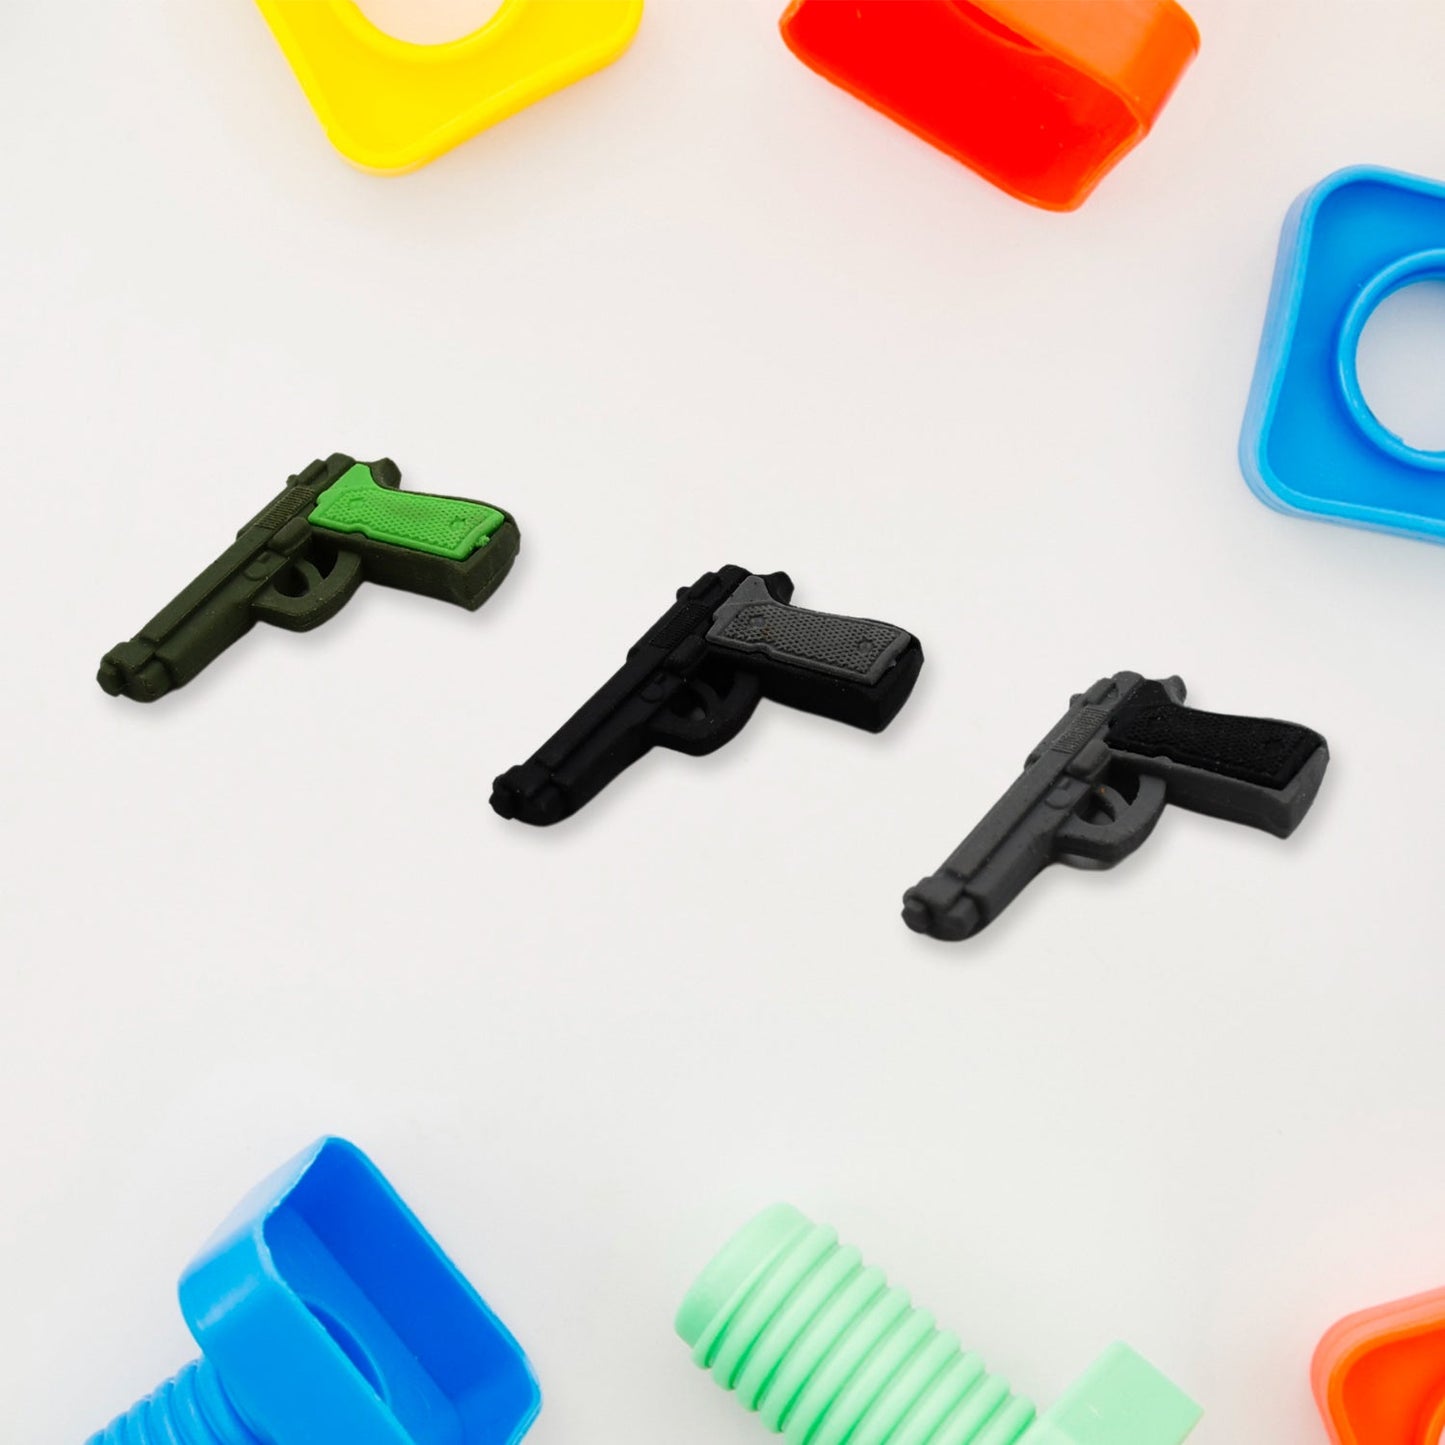 Eraser for Kids| Gun & Plane  Shape Eraser| Eraser Set Box| School Eraser| Stylish Eraser| Eraser for Kids School| Eraser for Artist| Cute| Birthday Gifts for Kids, Birthday Return Gifts (5 Pc set)